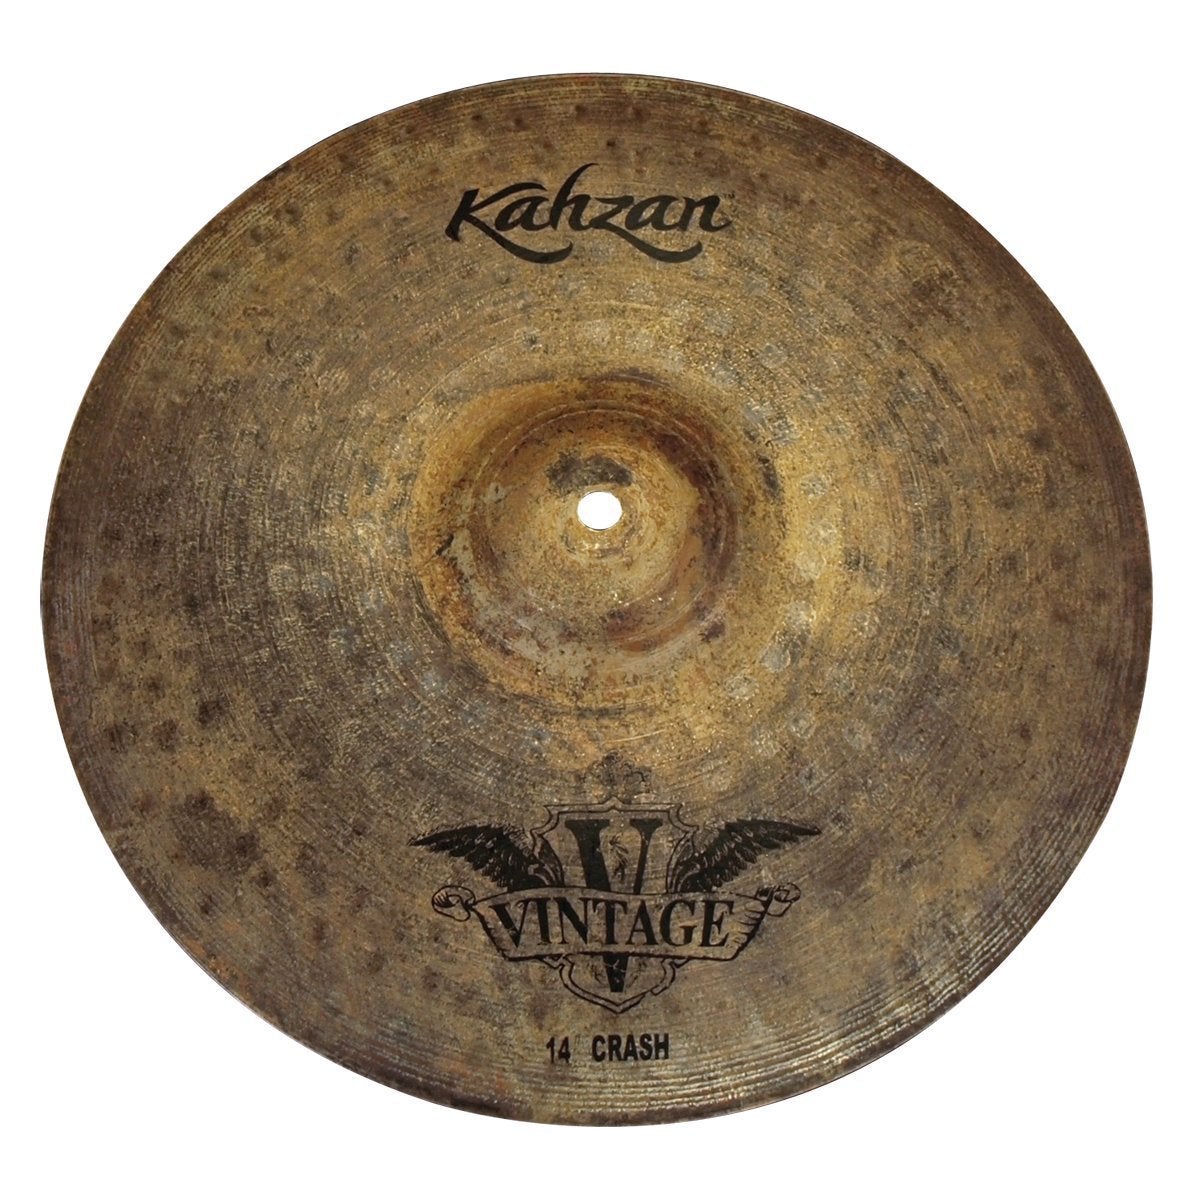 Kahzan 'Vintage Series' Crash Cymbal (14")